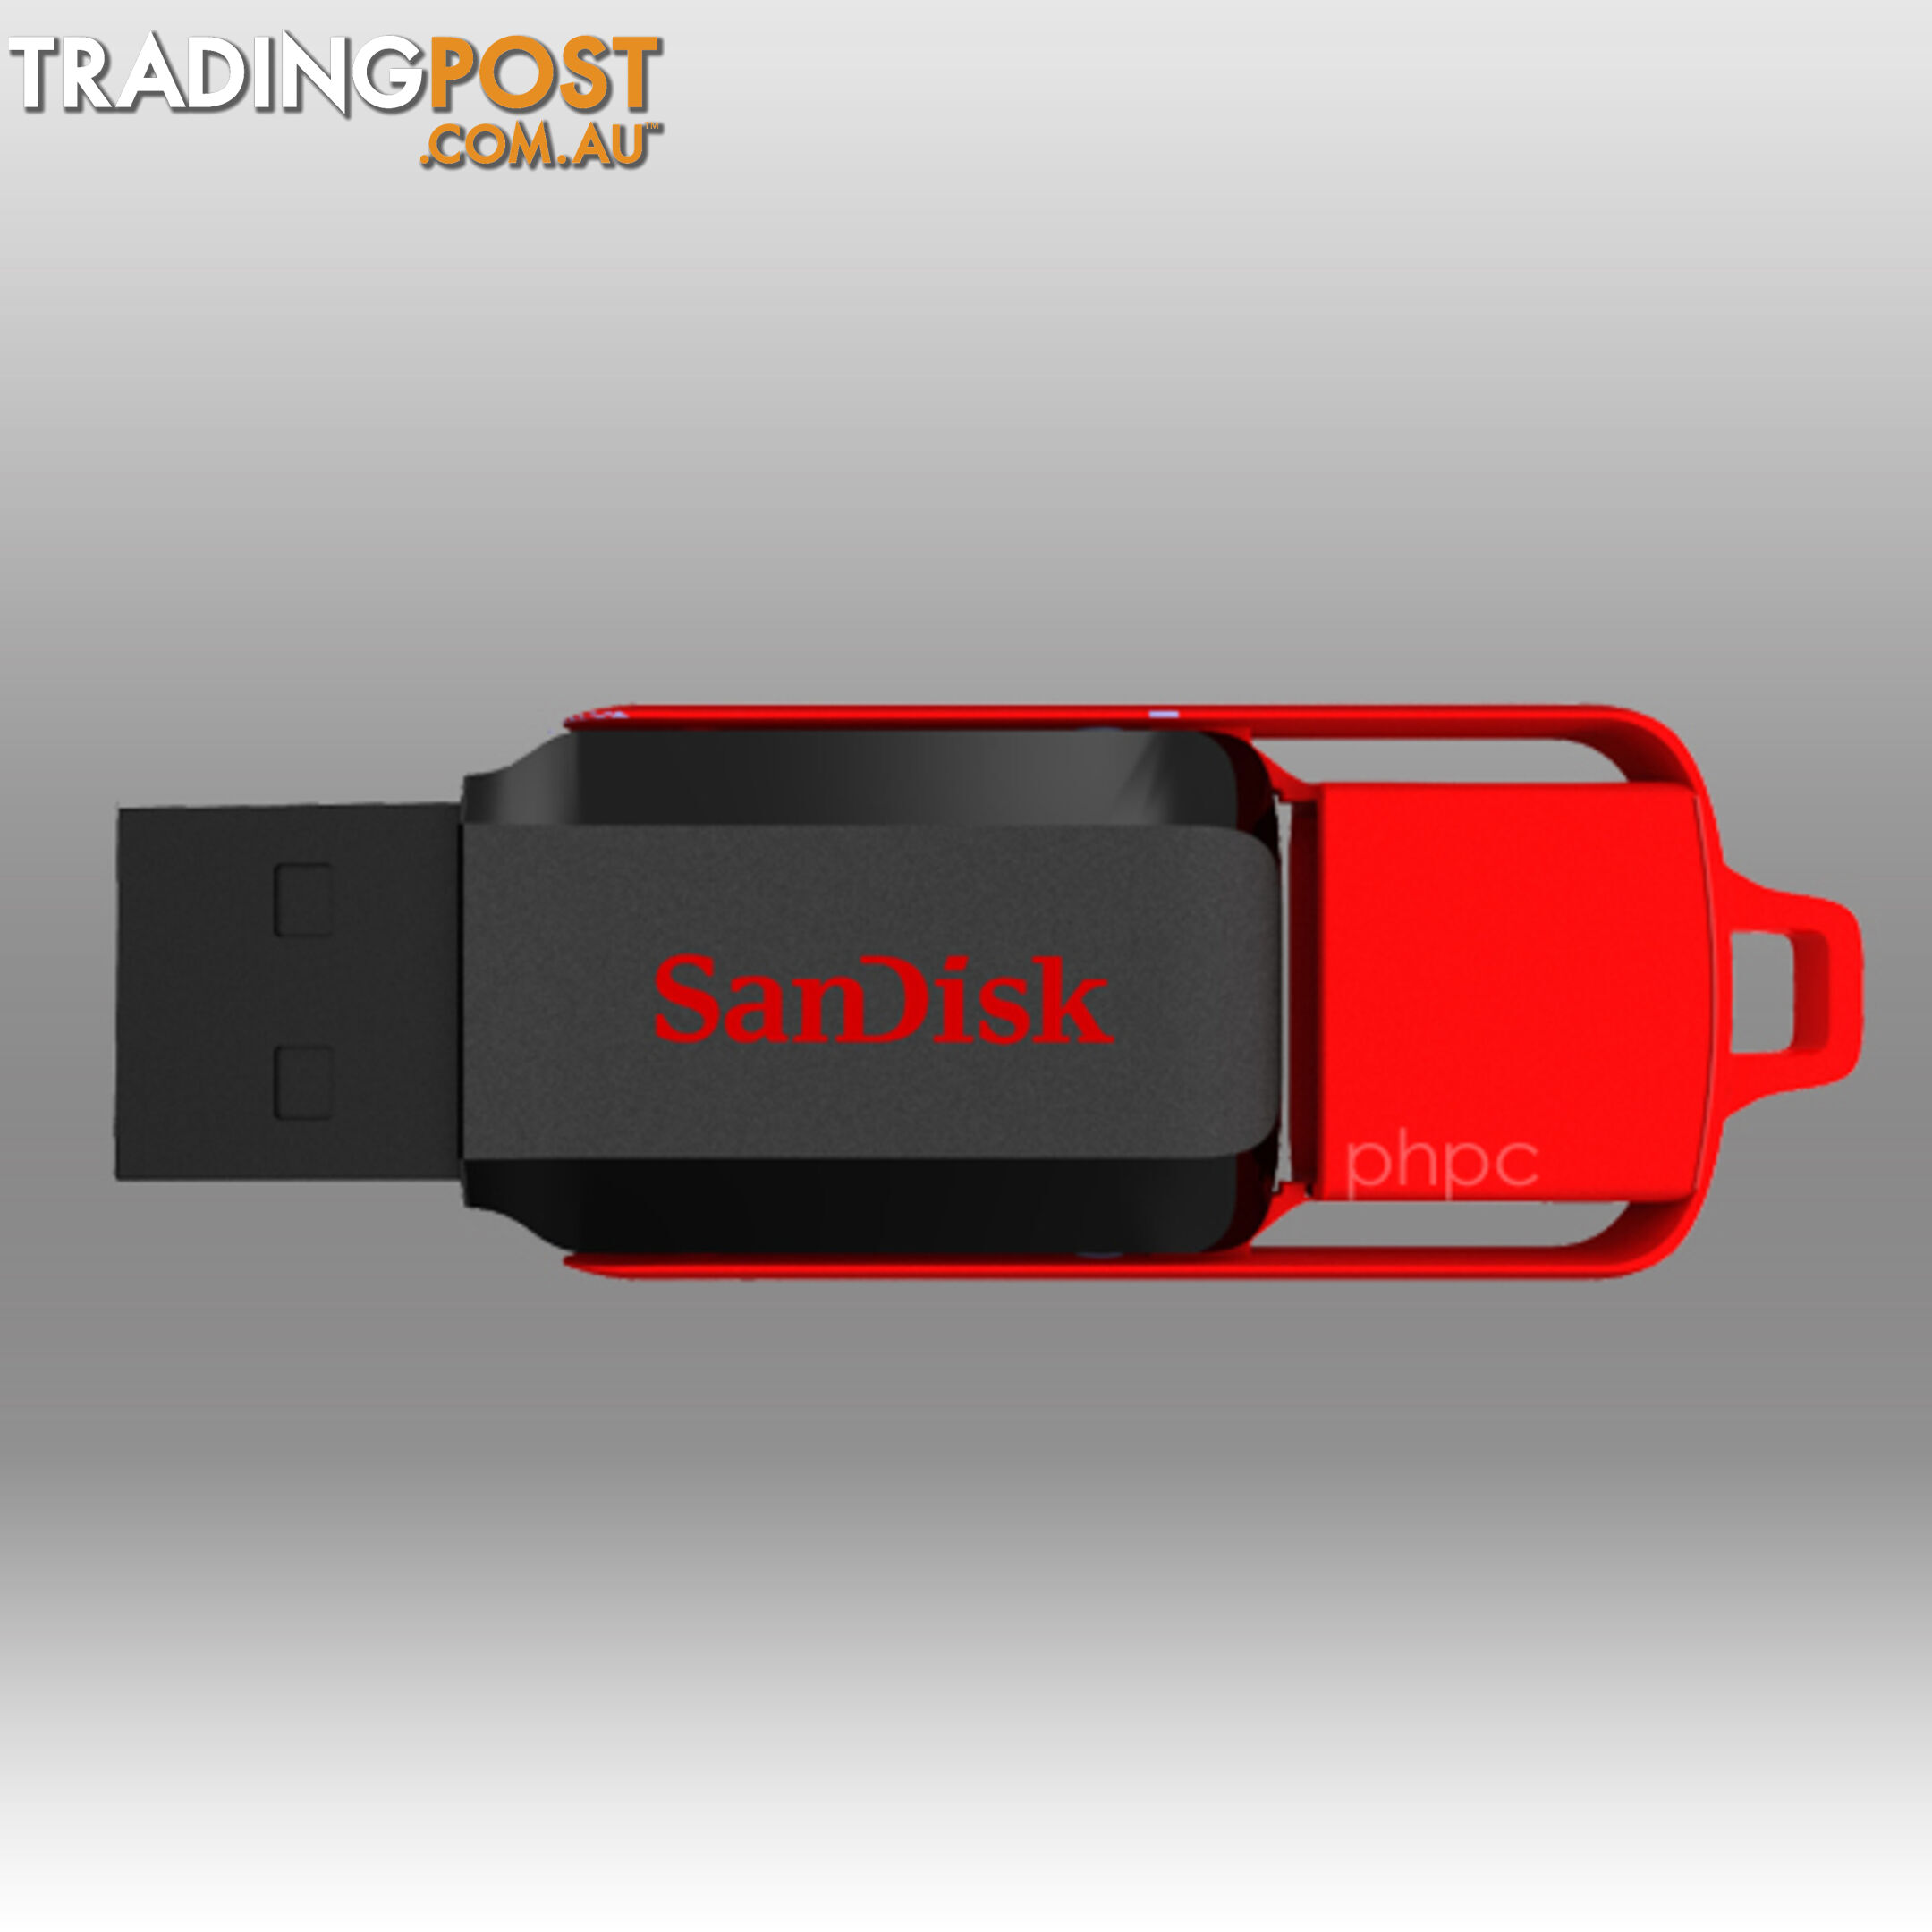 Sandisk Cruzer Switch CZ52 32GB USB Flash Drive